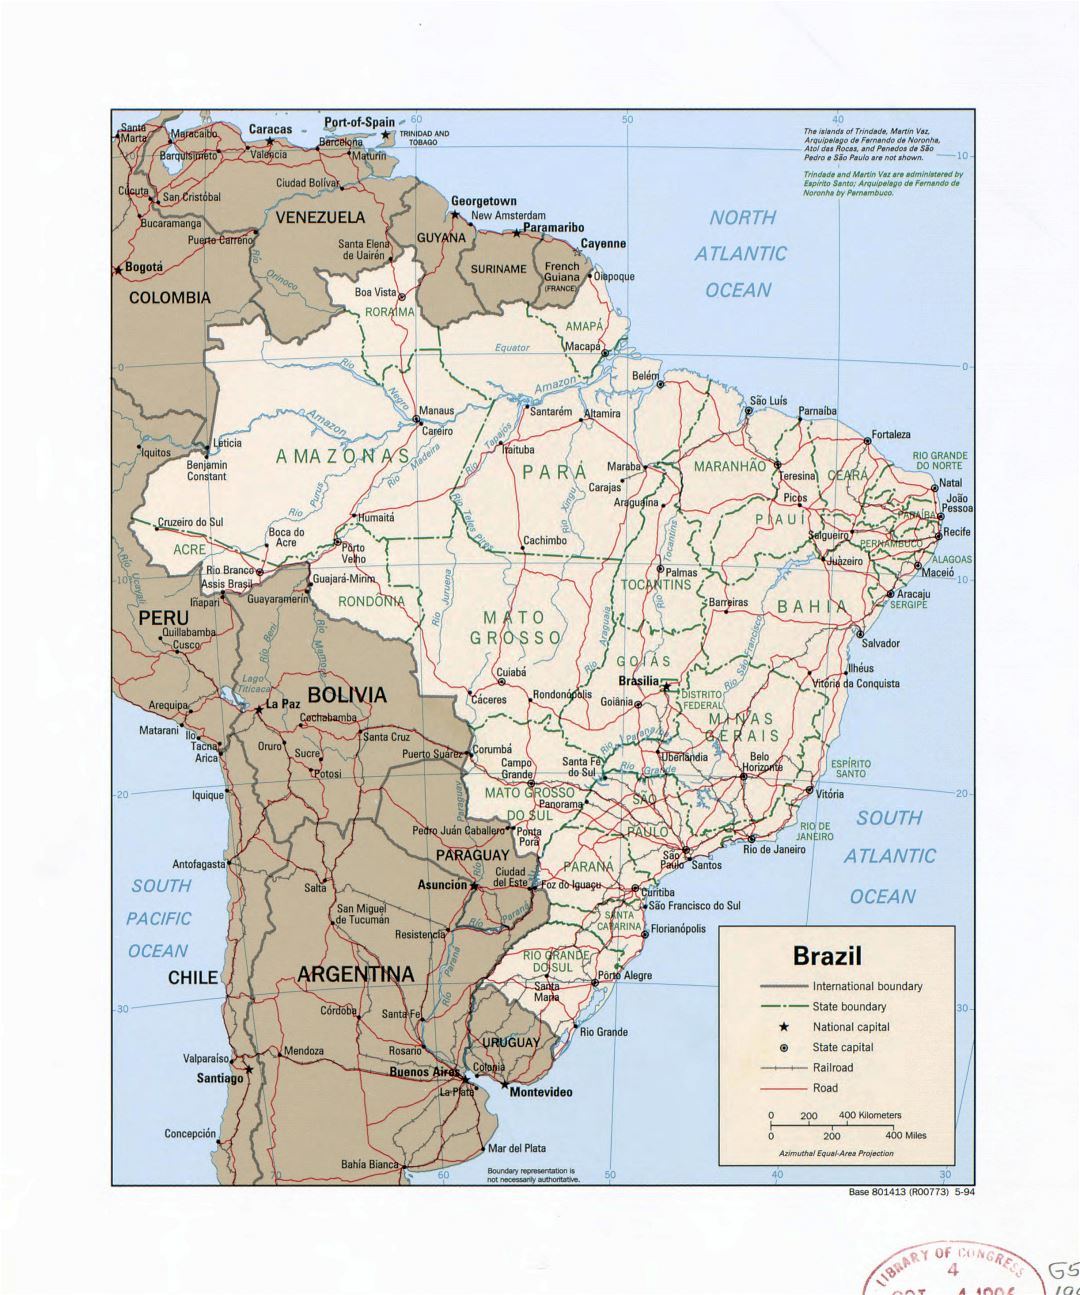 Grande detalle mapa político y administrativo de Brasil con ríos, carreteras, ferrocarriles y principales ciudades - 1994